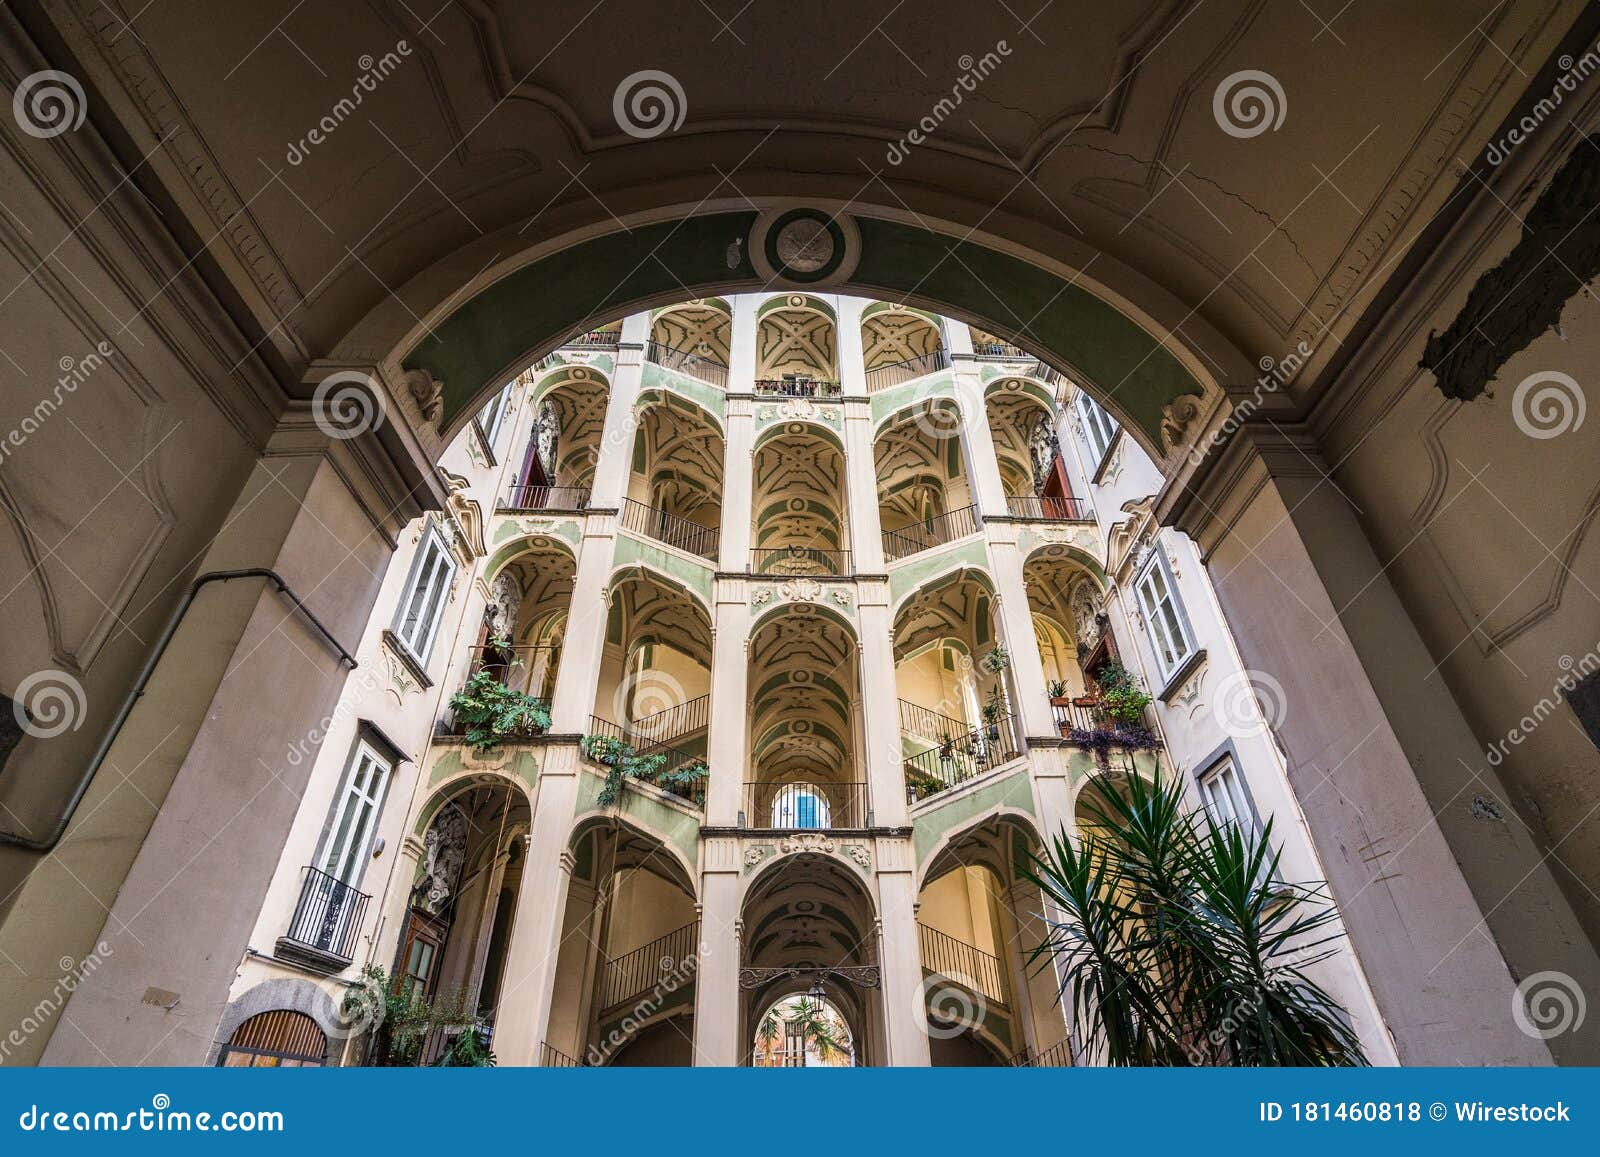 low angle shot of palazzo dello spagnolo in rione sanita, naples, italy